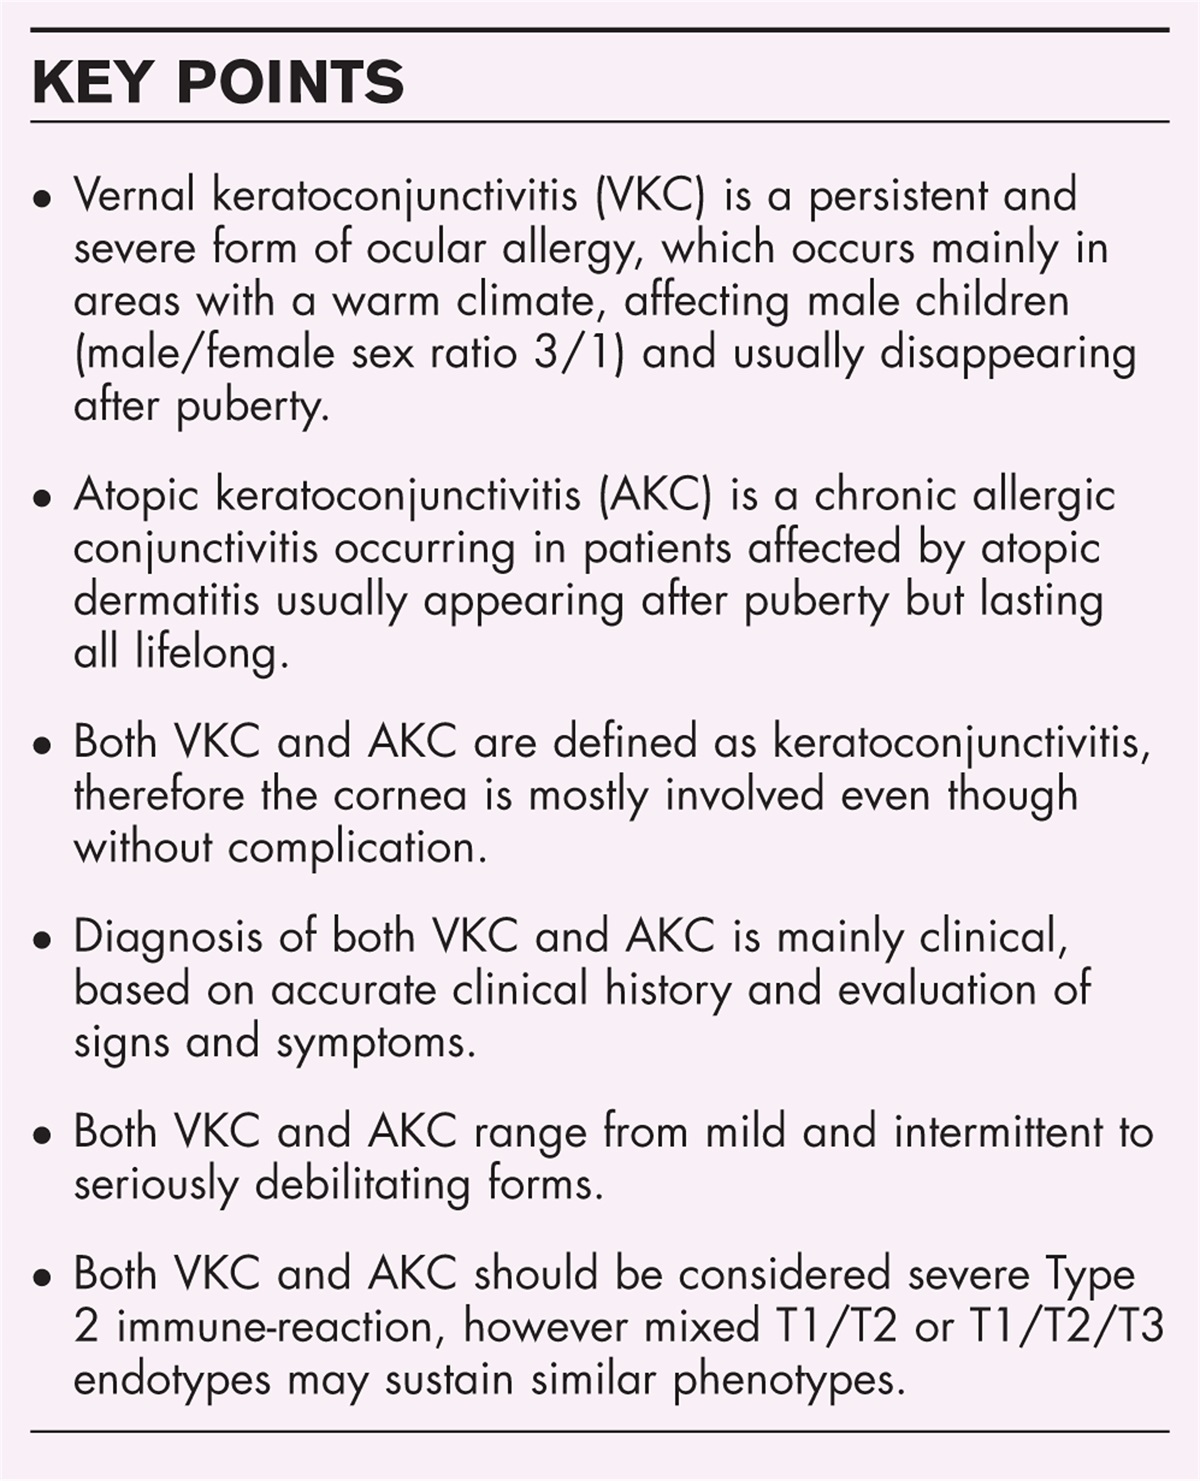 Diagnostic criteria of chronic conjunctivitis: atopic keratoconjunctivitis and vernal keratoconjunctivitis